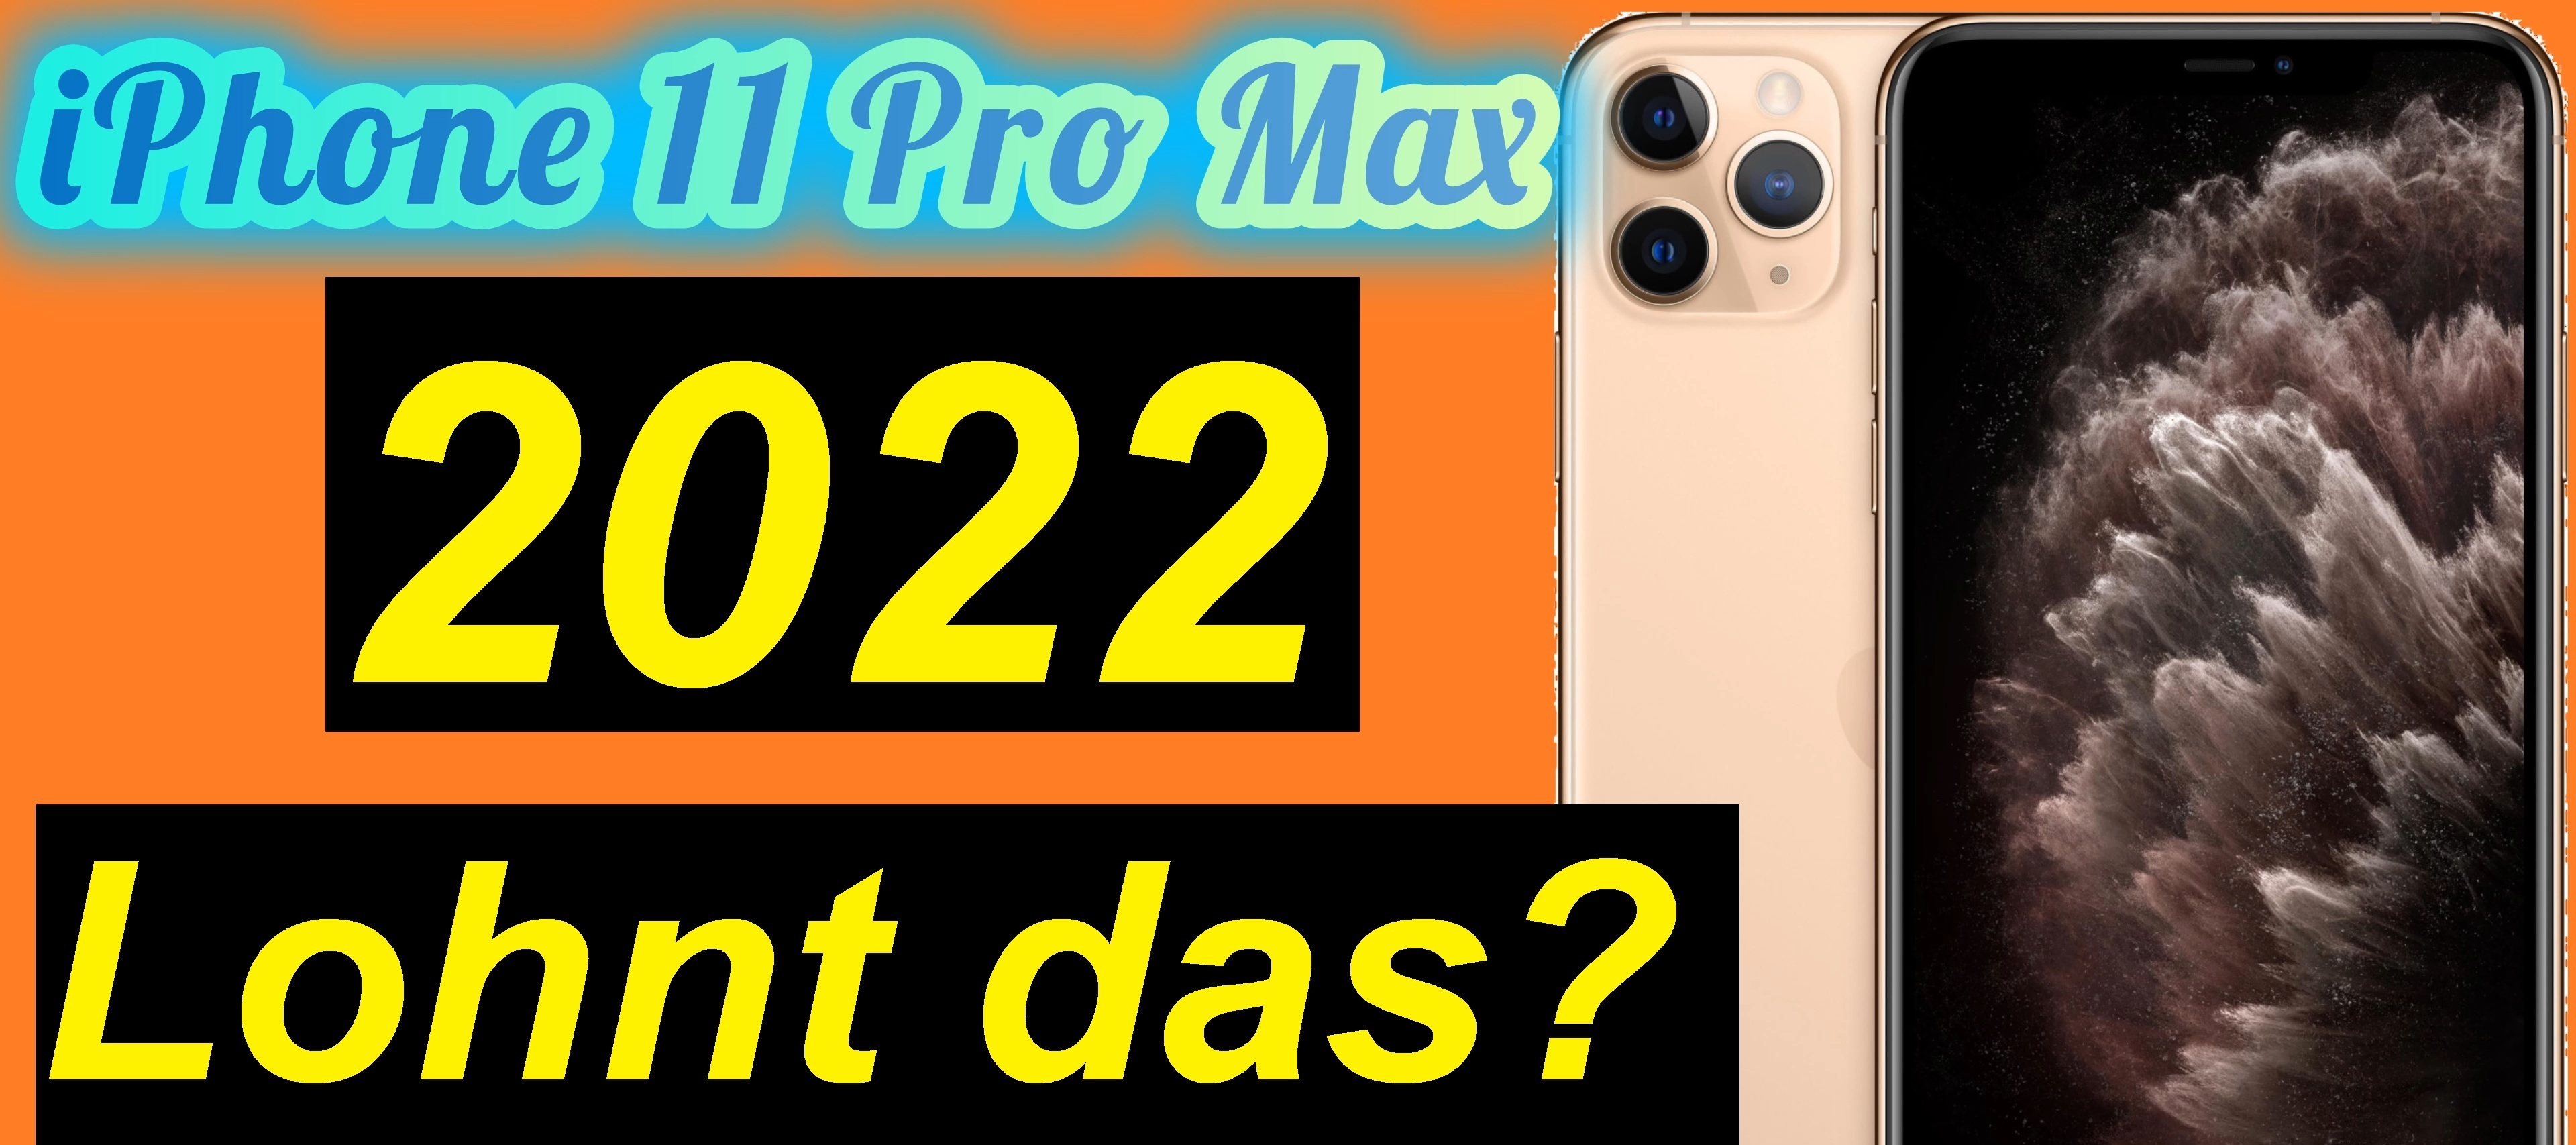 Lohnt sich das Apple iPhone 11 Pro Max in 2022 noch?